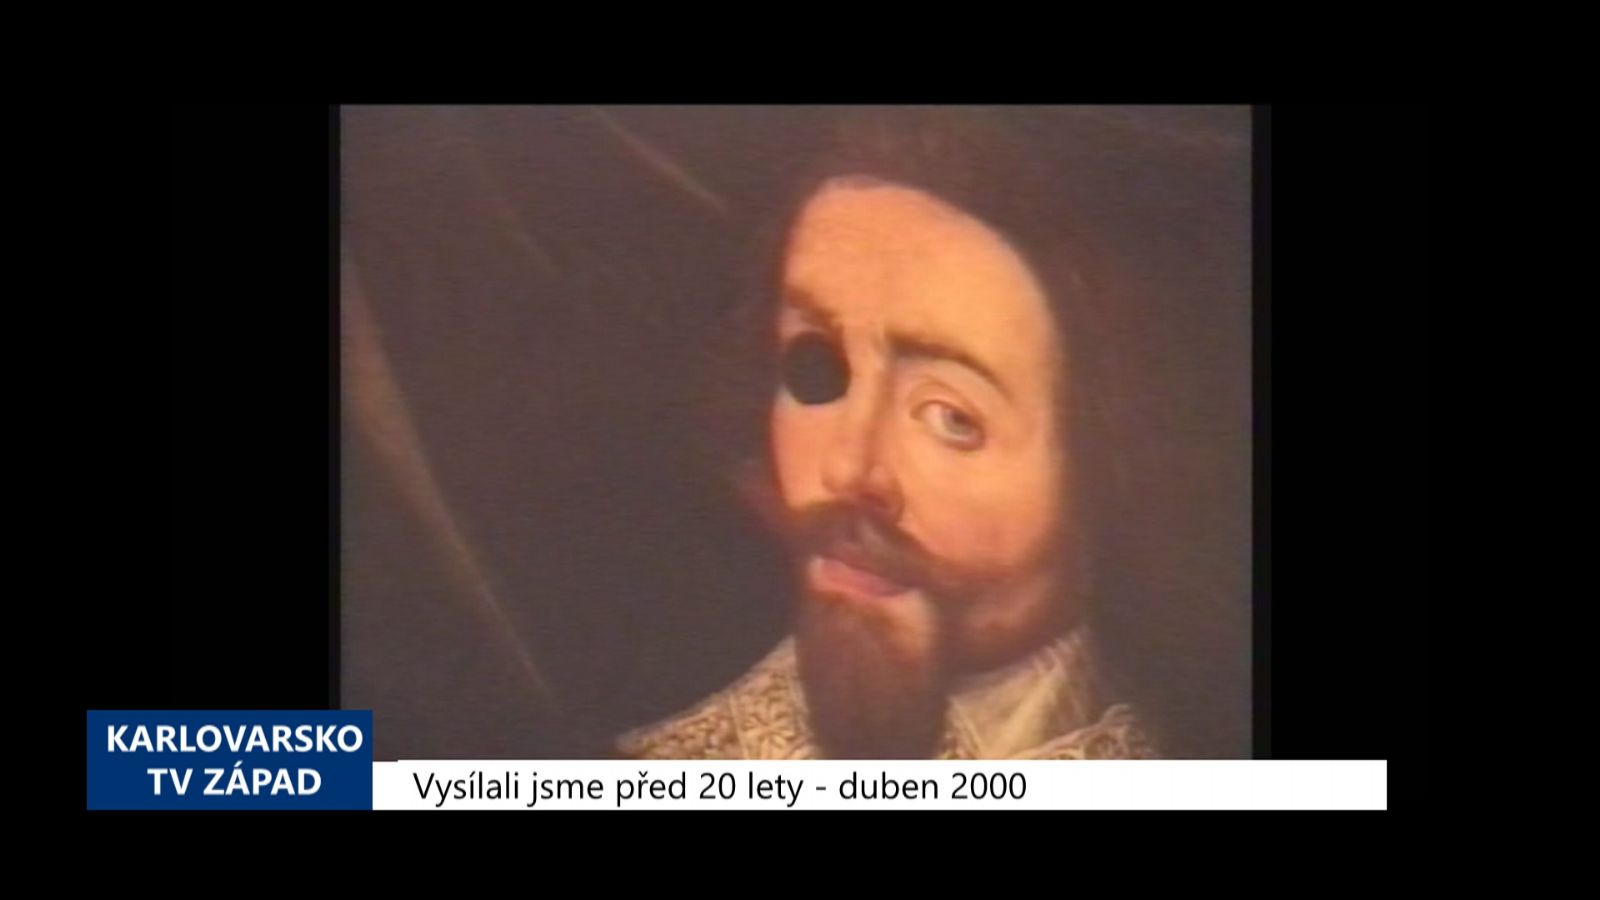 2000 – Cheb: Muzeum vydalo katalog obrazů z Valdštejnské obrazárny (TV Západ)